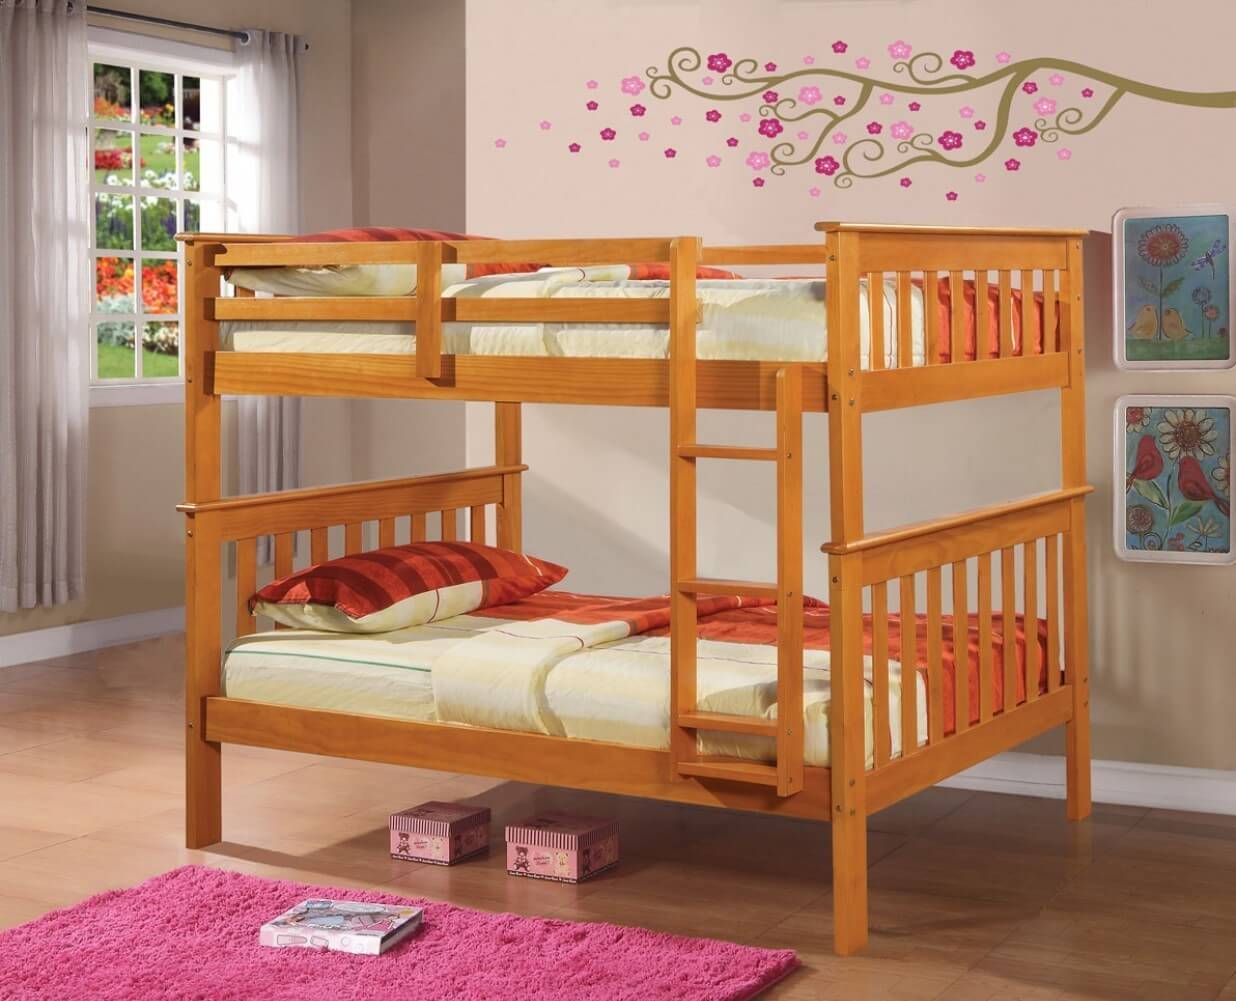 Một chiếc giường tầng bằng gỗ đơn giản